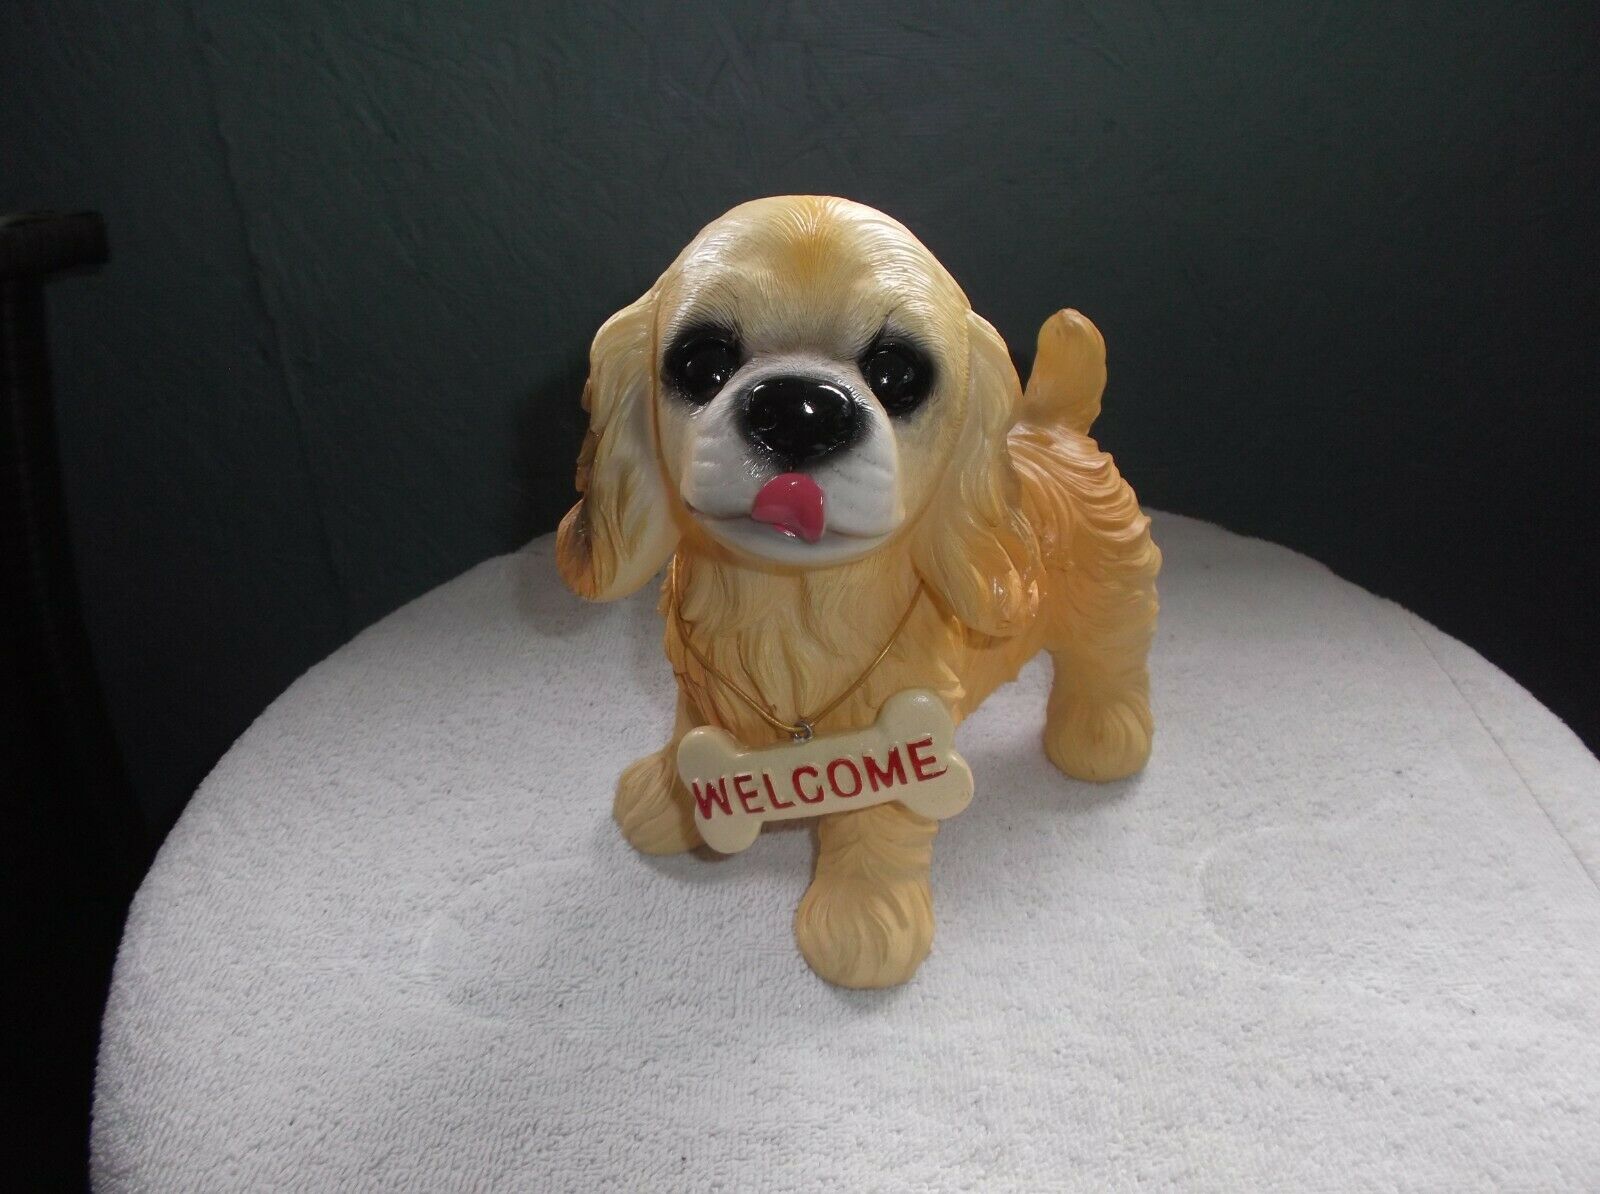 Labrador Retriever Dog Statue - That Said Welcome